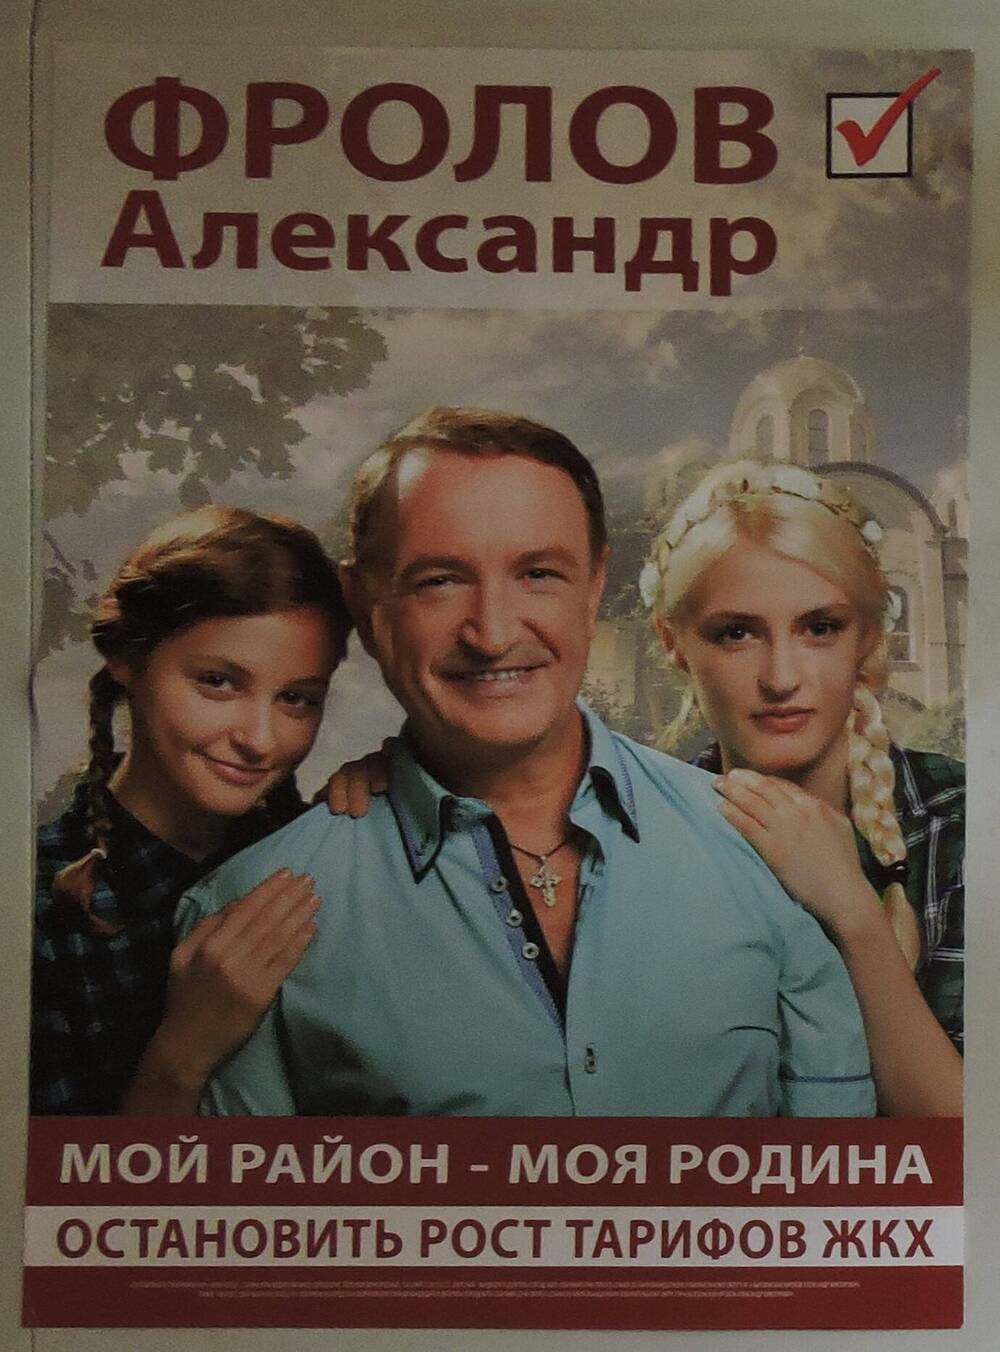 Агитационный плакат Выборы 13.09.2015 Фролов Александр